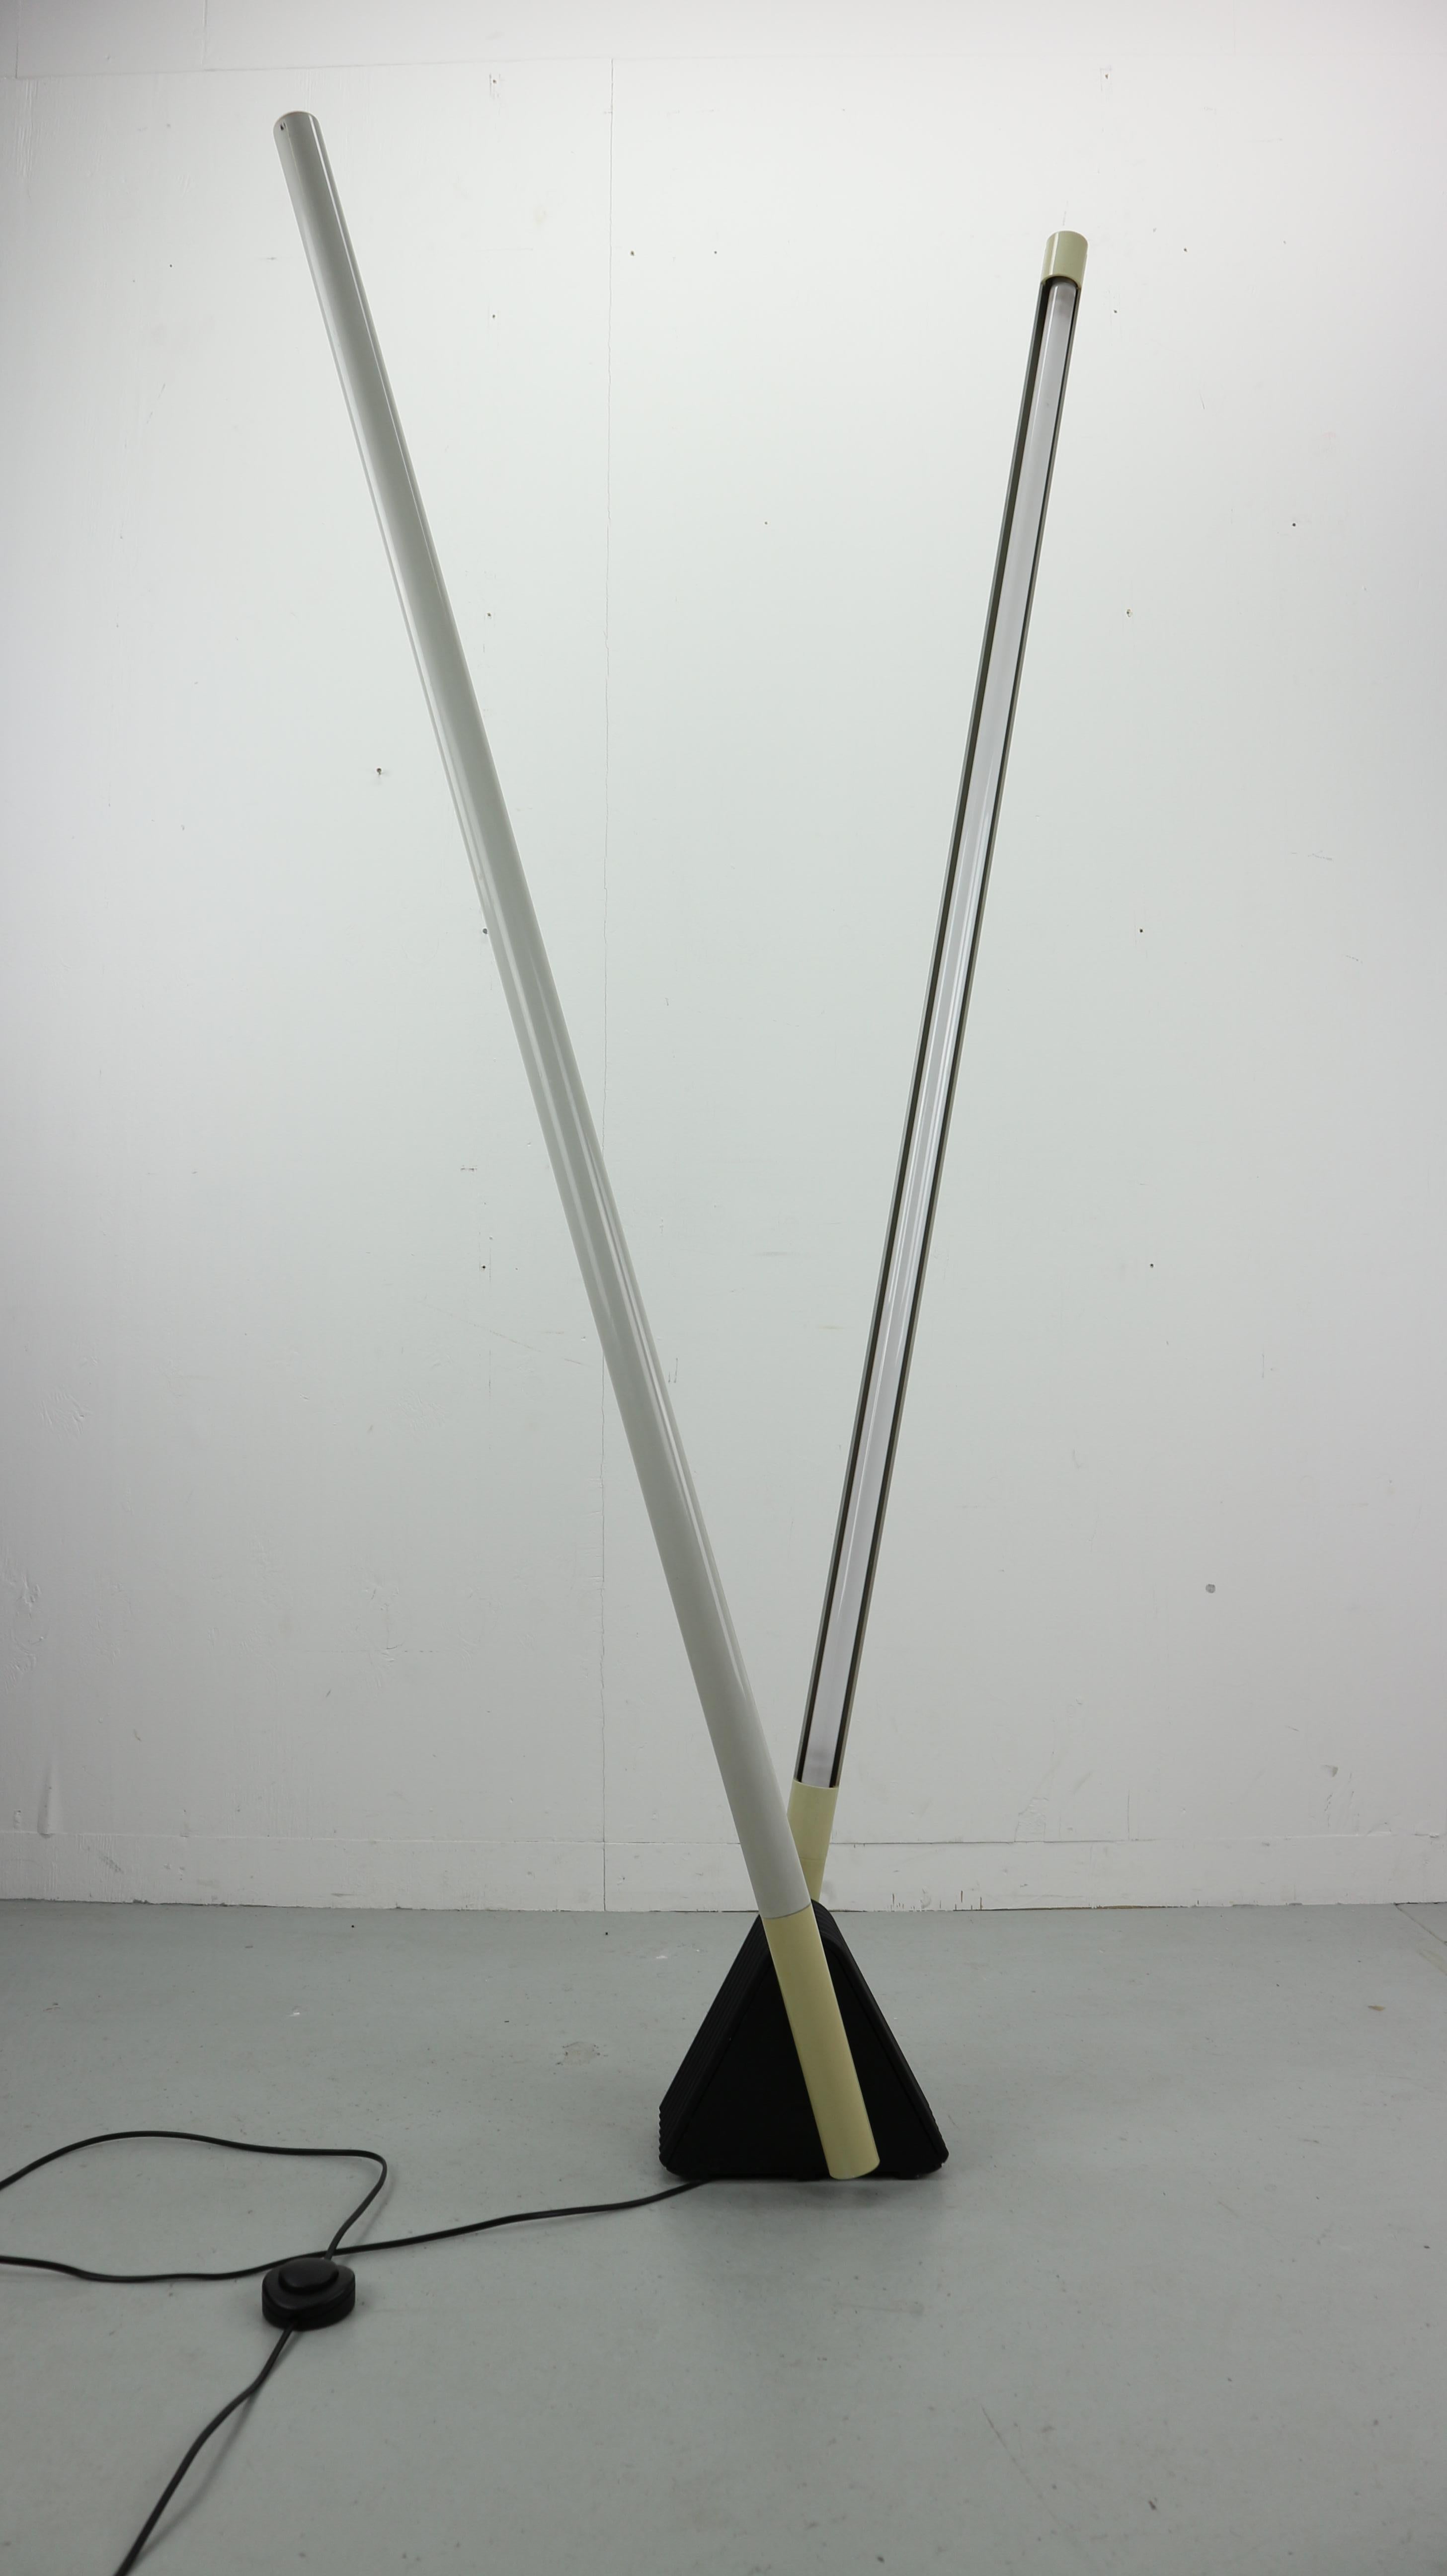 Sehr schöne verstellbare Sistema Flu Lampe:: entworfen von Rodolfo Bonetto für Luci:: Italien 1981. Diese Steh-:: Wand- oder Deckenleuchte (Höhe 182 cm) hat einen schwarzen dreieckigen Fuß und zwei graue verstellbare Arme. Die Leuchte kann an der